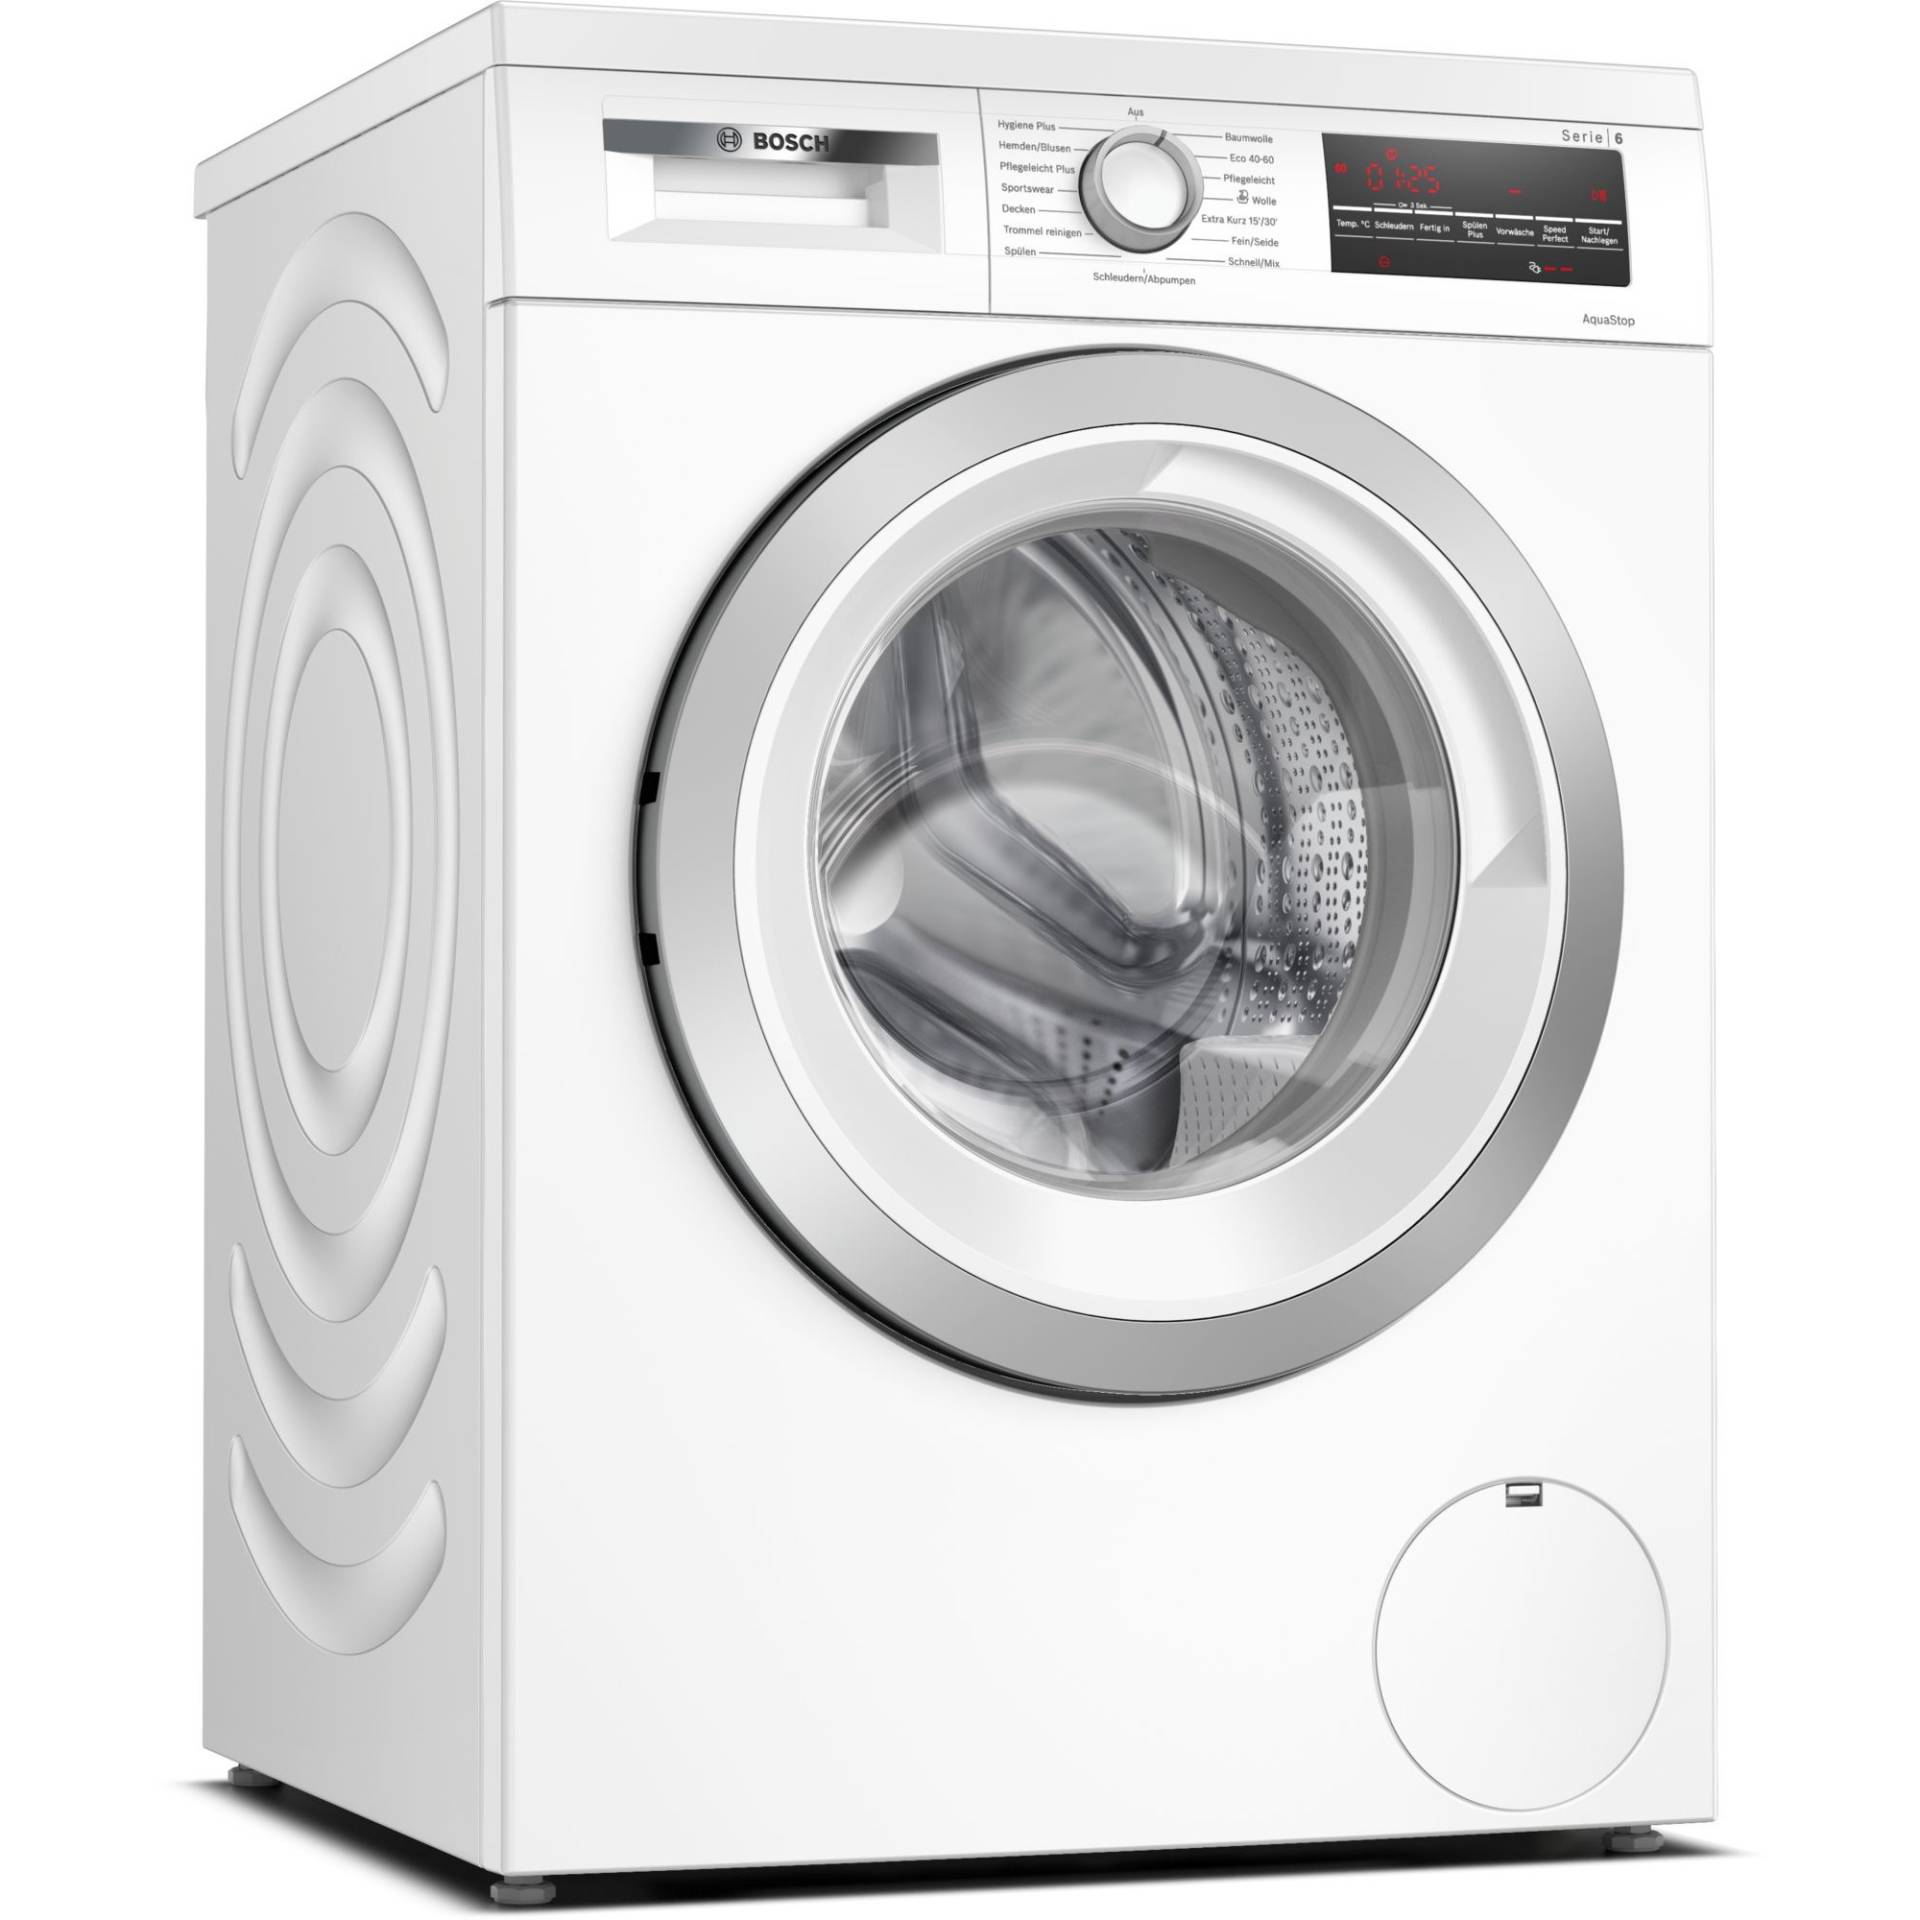 WUU28T70 Serie 6, Waschmaschine von Bosch